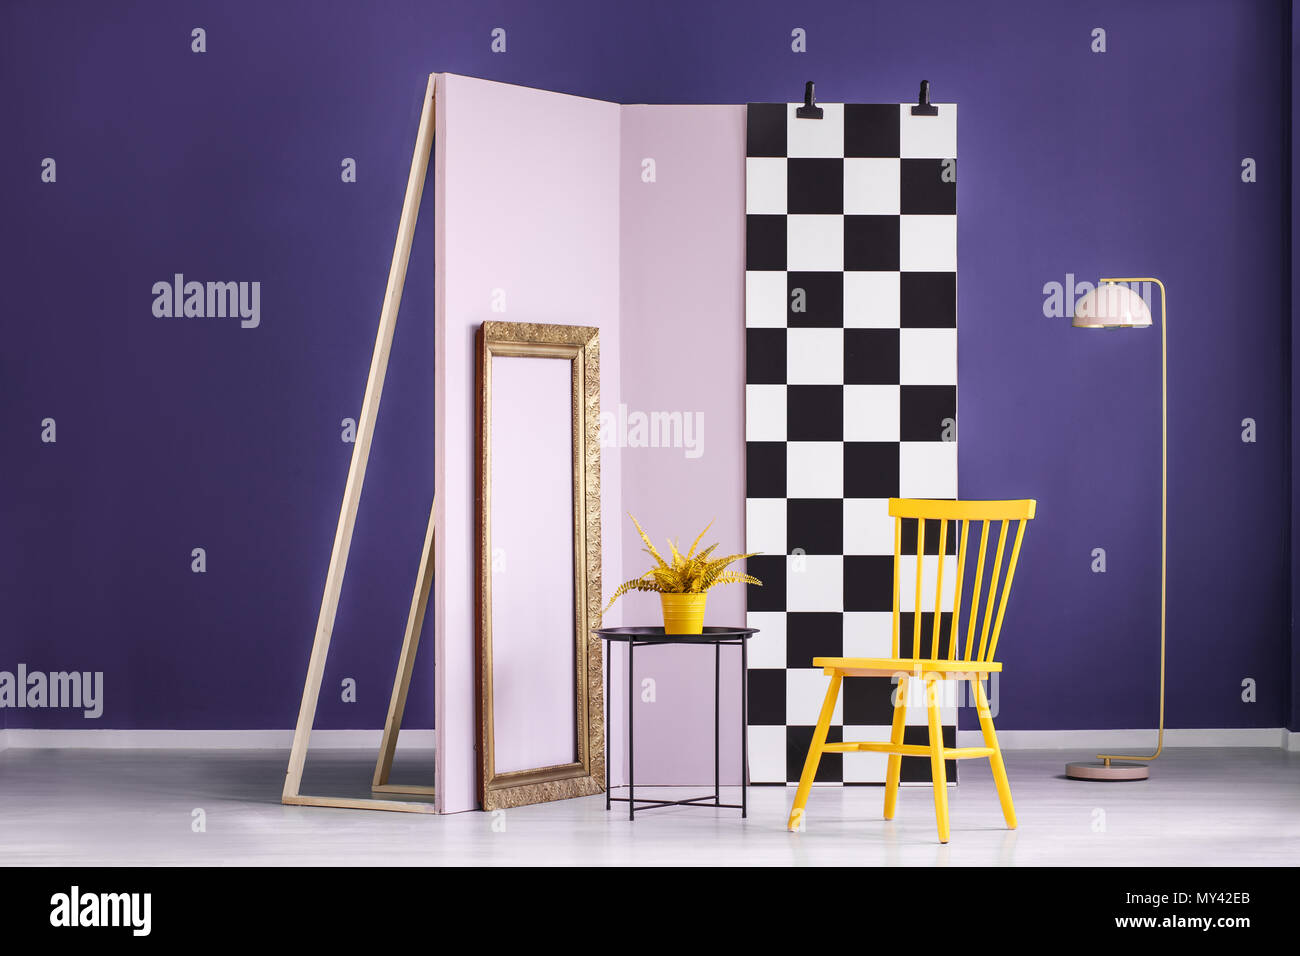 Chaise jaune à côté d'un tableau noir avec intérieur en studio et mur damier rose Banque D'Images